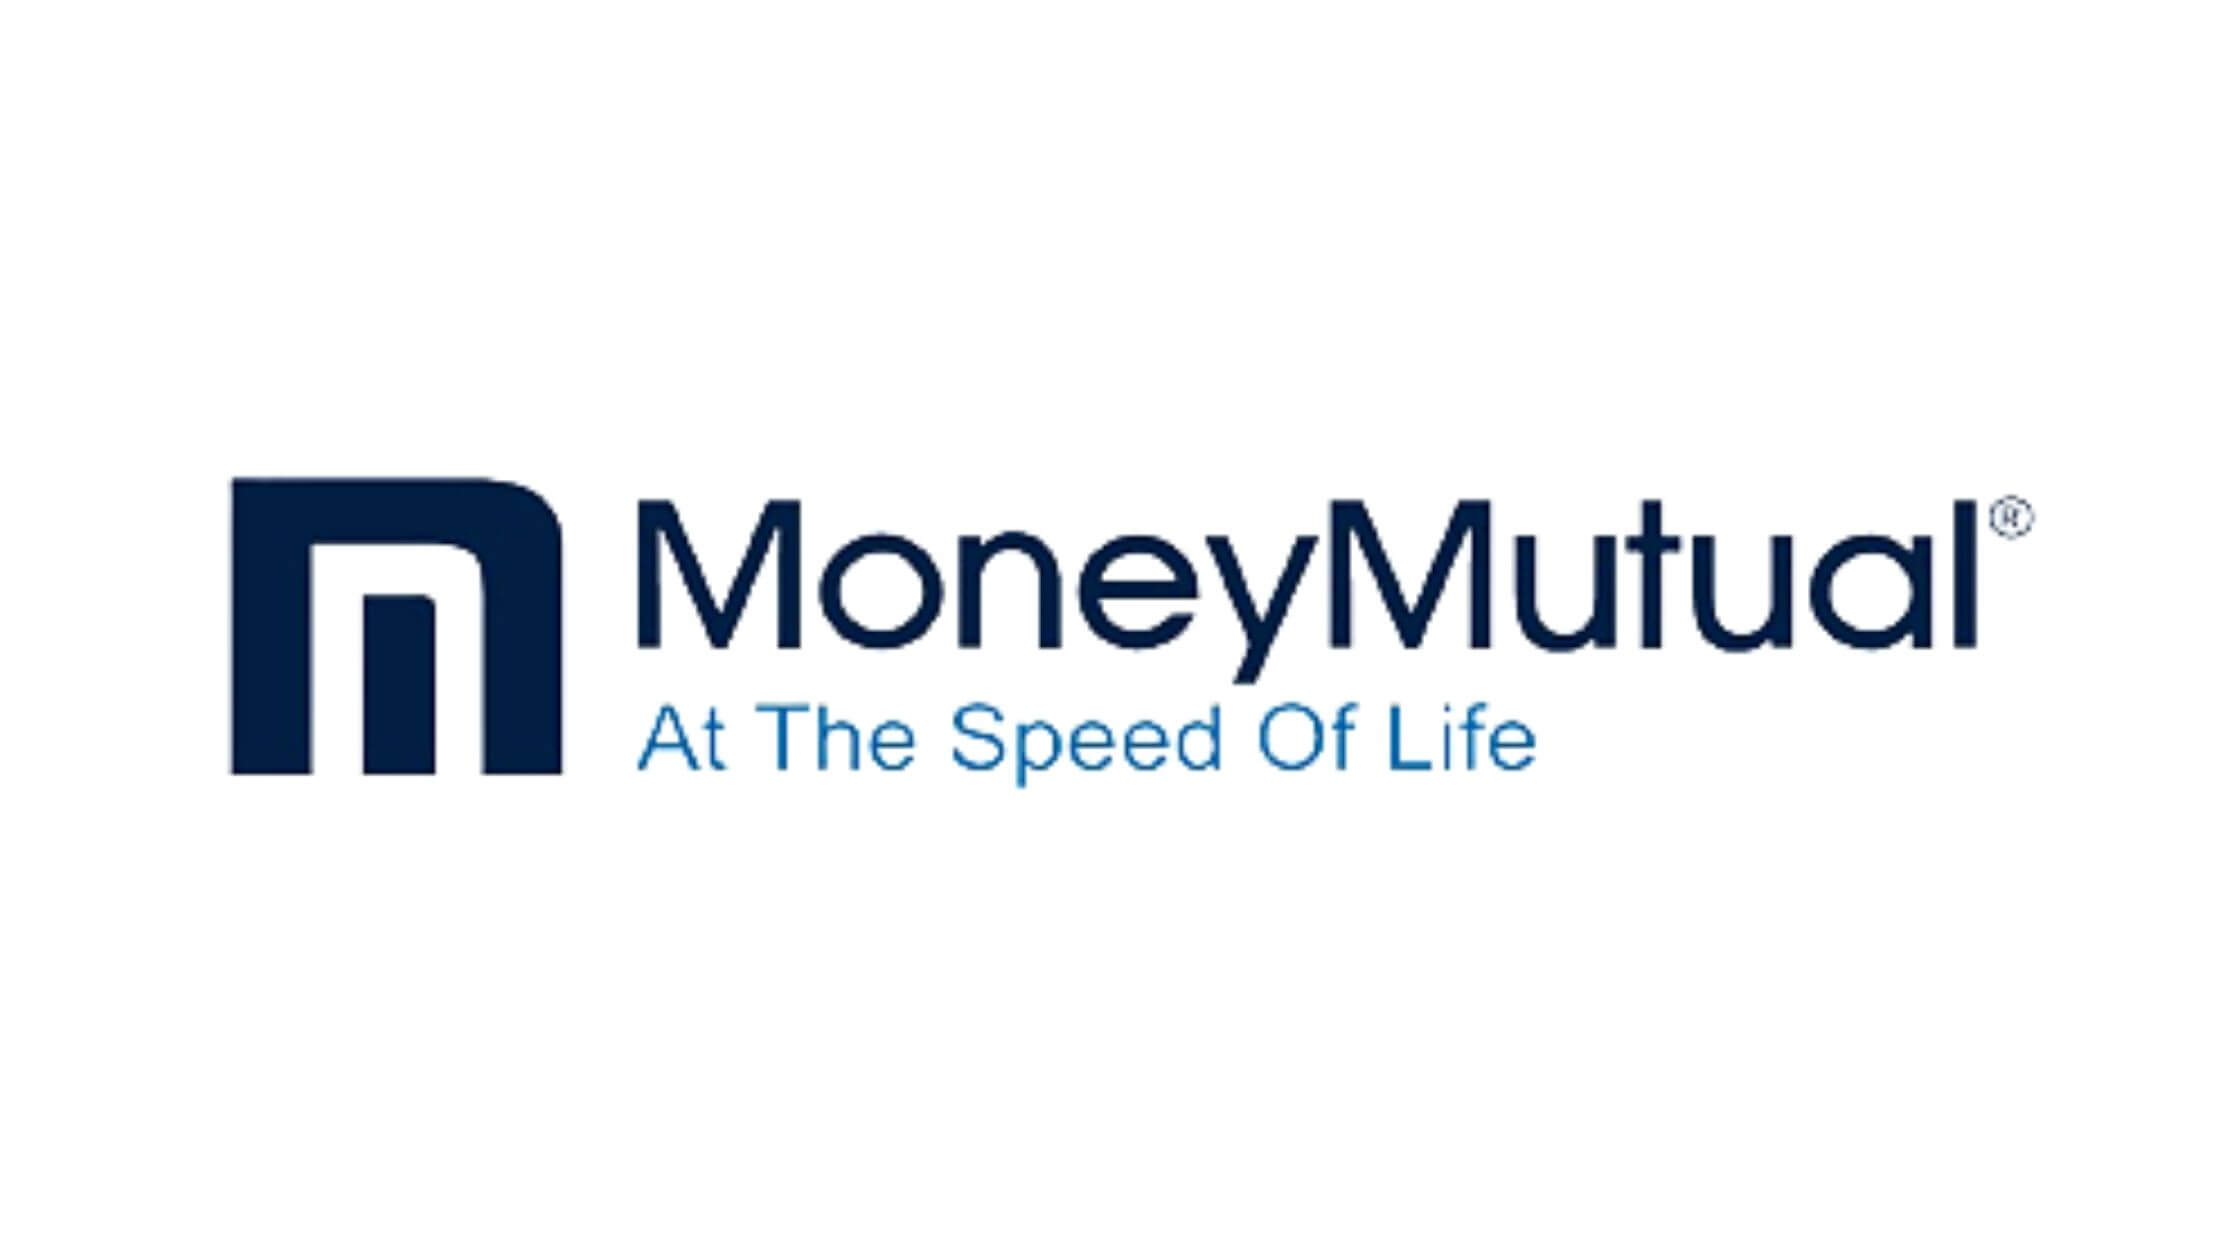 MoneyMutual